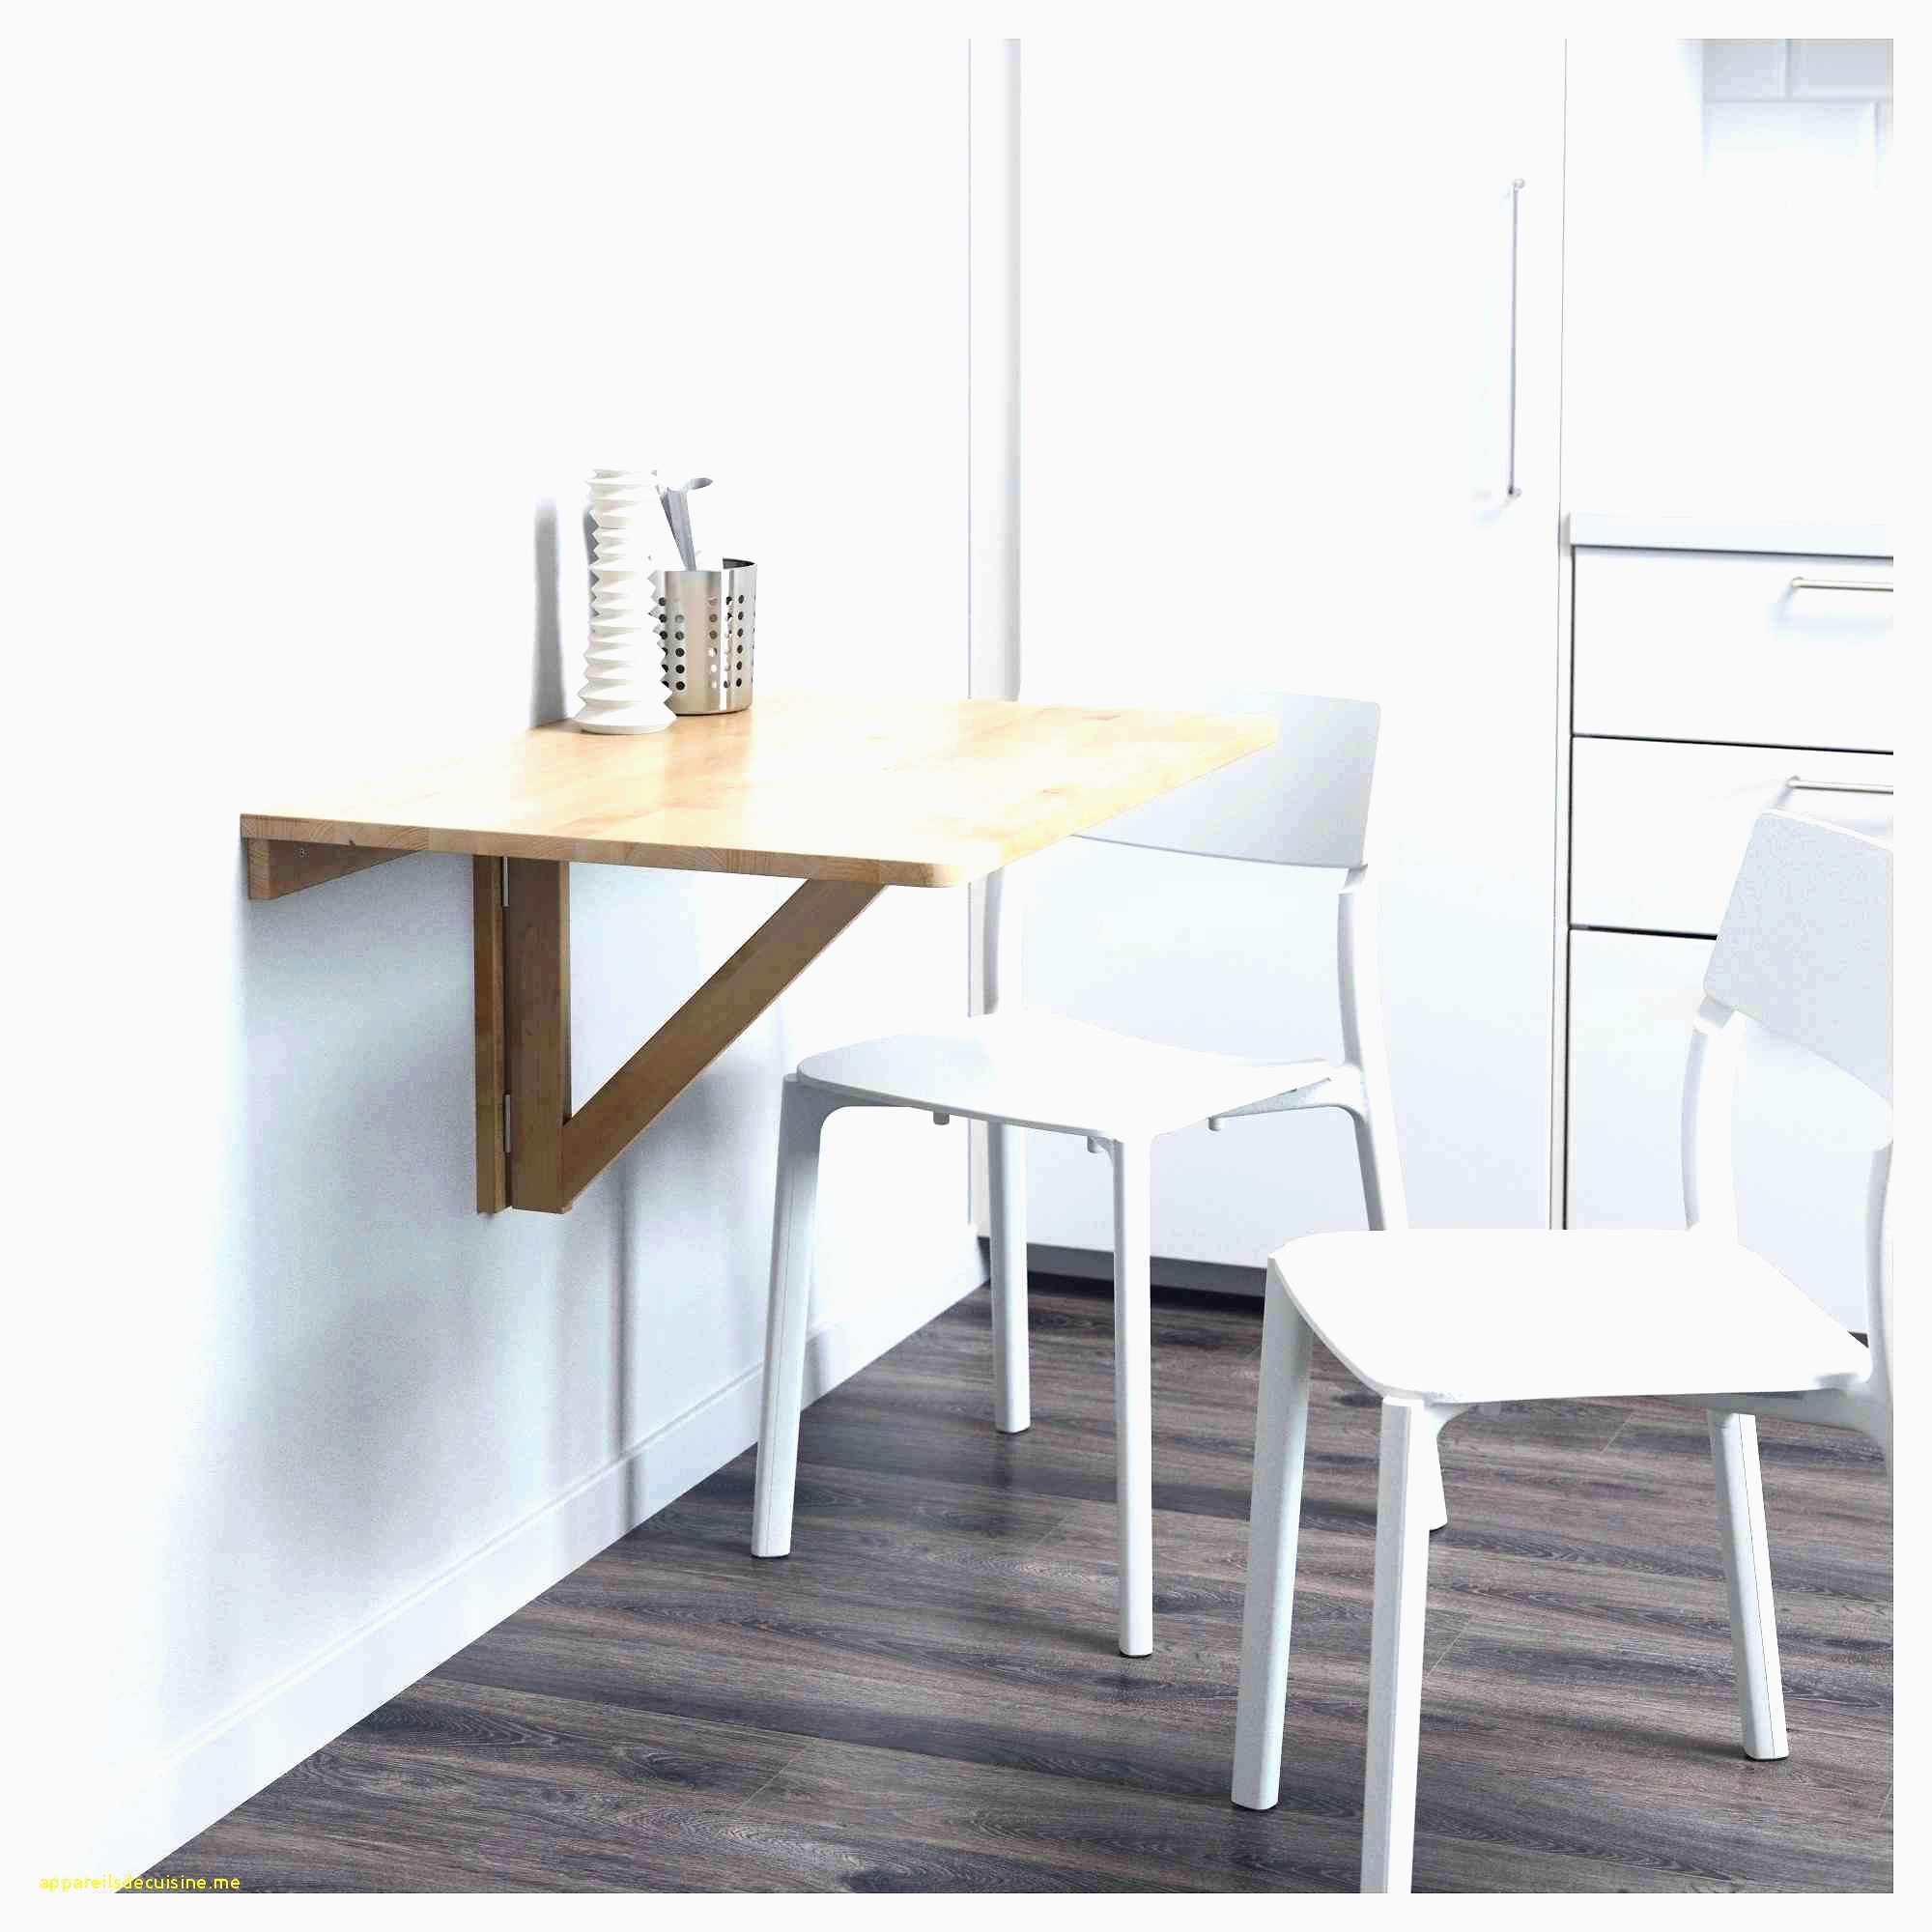 produit traitement bois frais cuisine table chaise 0d alinea haute de luxe 6ymiyfbgv7 dtsqrhc stock de produit traitement bois